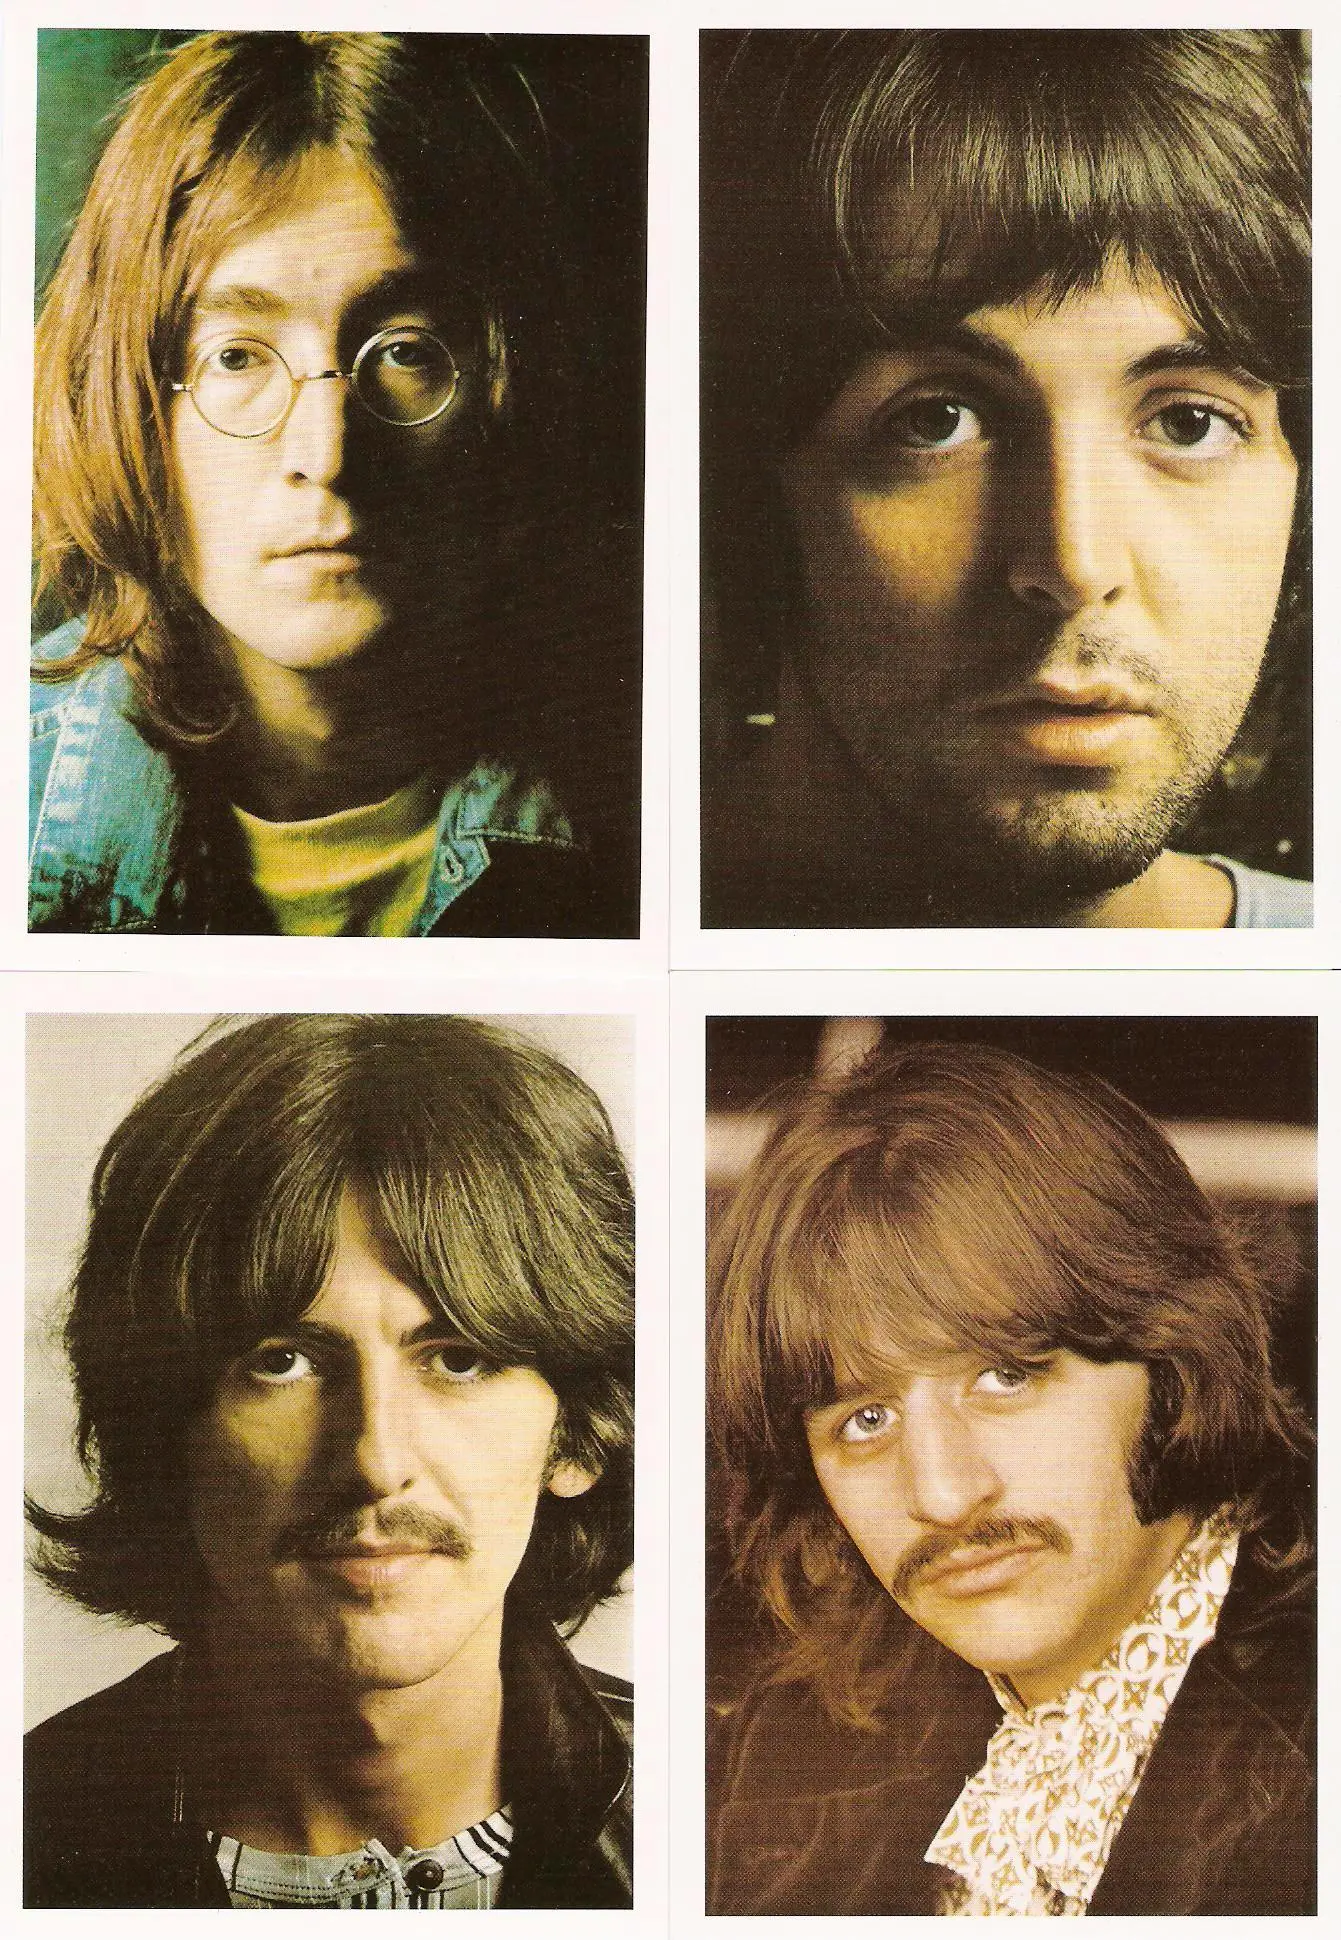 The Beatles, “Sexy Sadie”